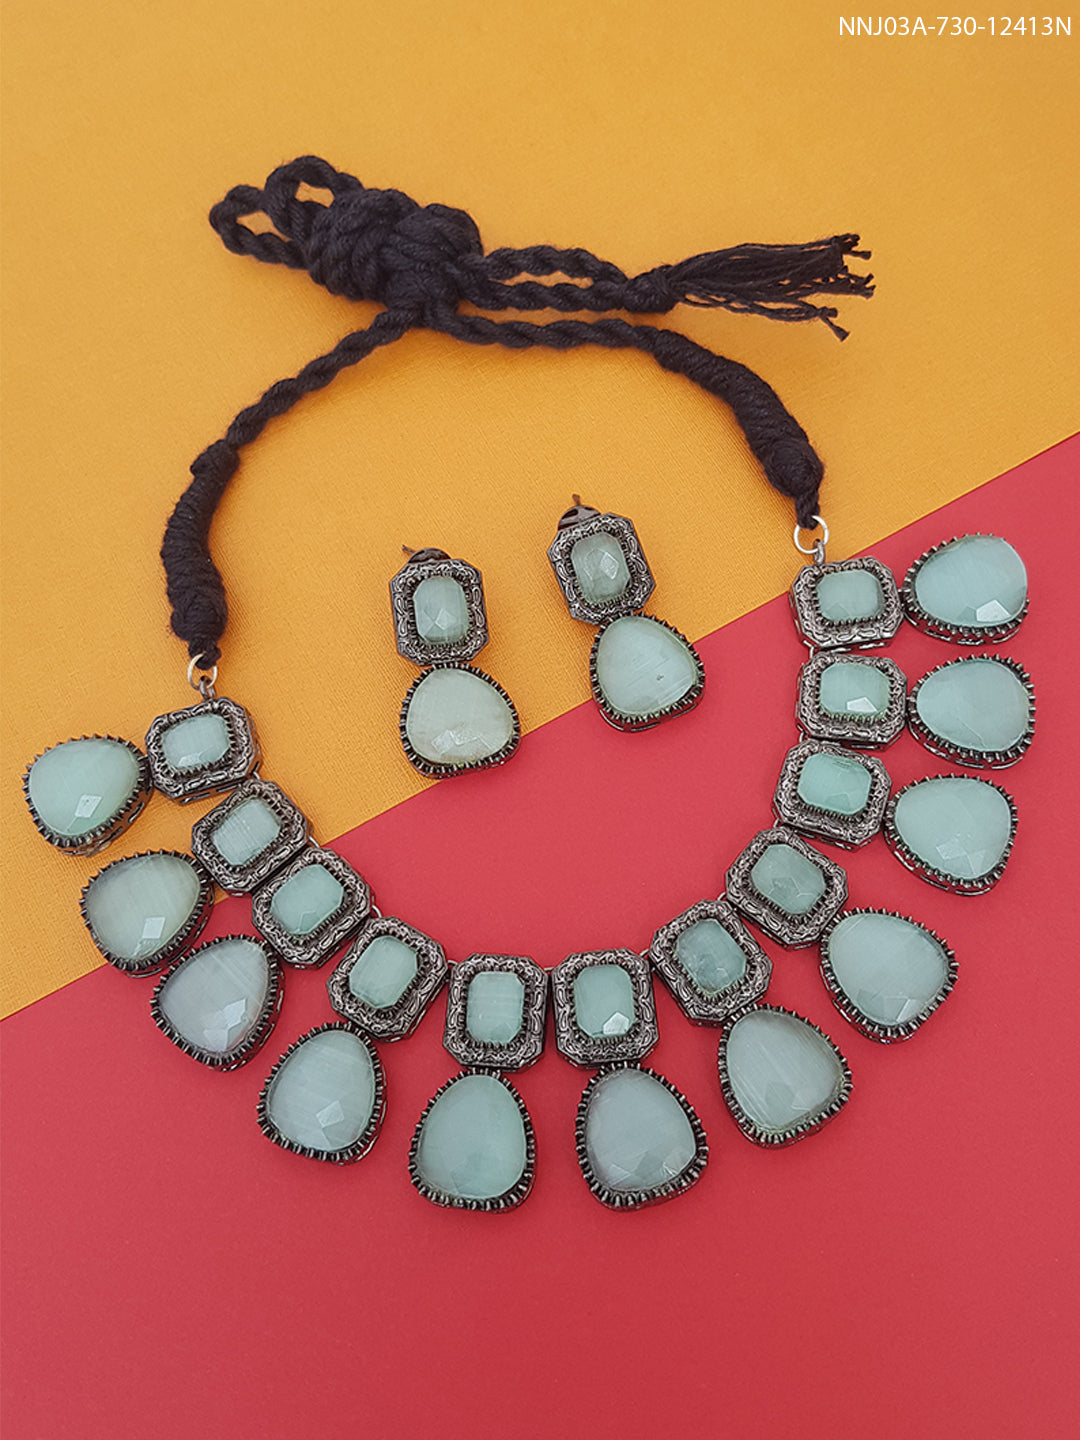 Premium Victorian Design Monalisa stones Necklace set 12413N